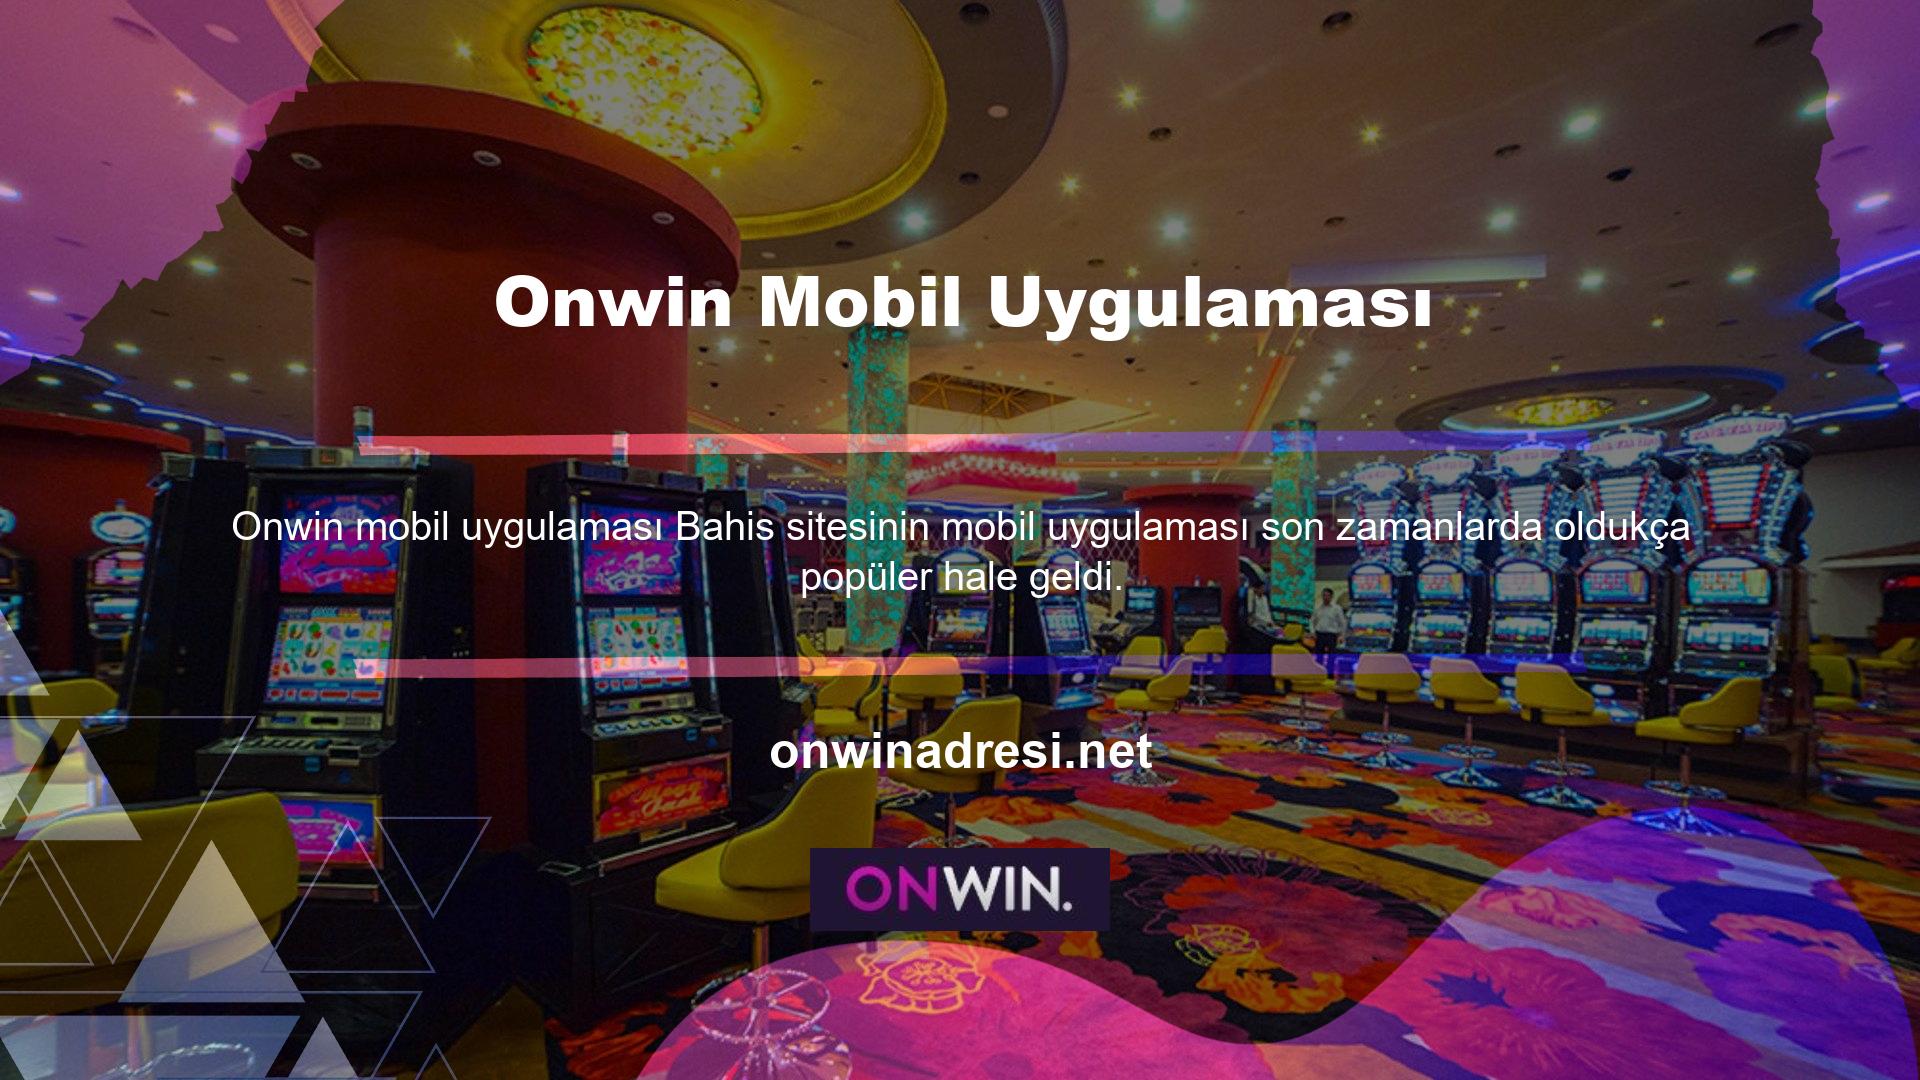 Onwin mobil uygulaması